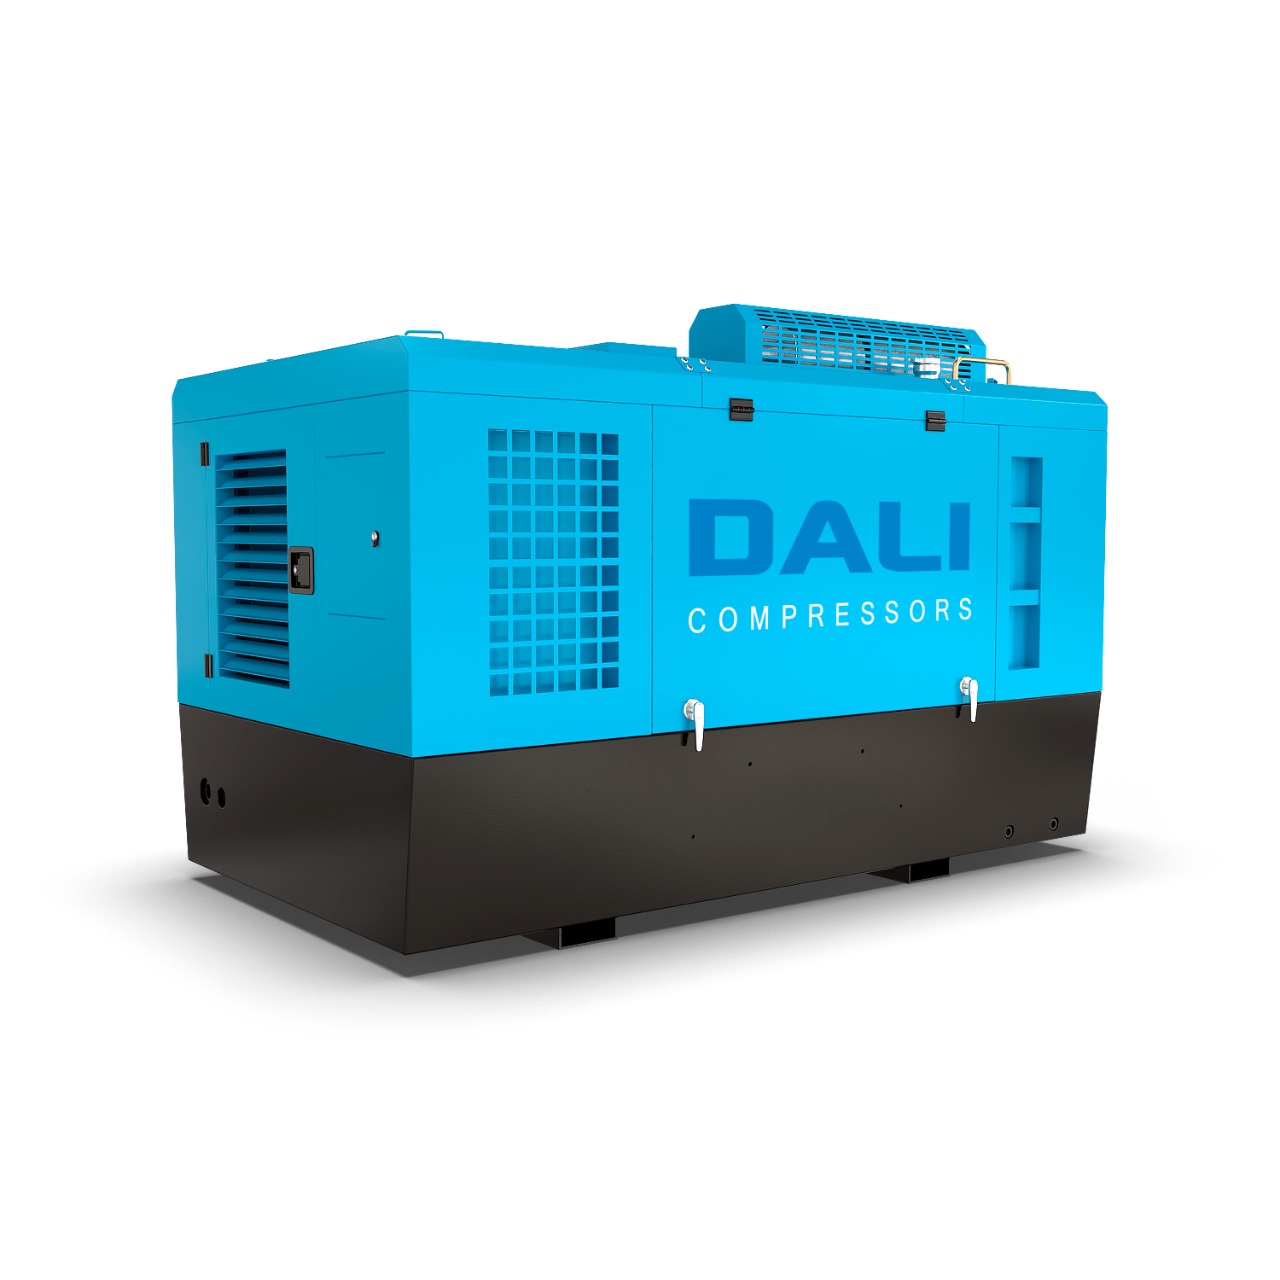 Передвижной дизельный компрессор DALI DLCY-9/8B (YUCHAI) представляет собой неприхотливую в обслуживании, долговечную, надежную и экономичную модель.
 
 Для DALI DLCY-9/8B (YUCHAI) характерна величина рабочего давления 8 бар при повышенной производитель